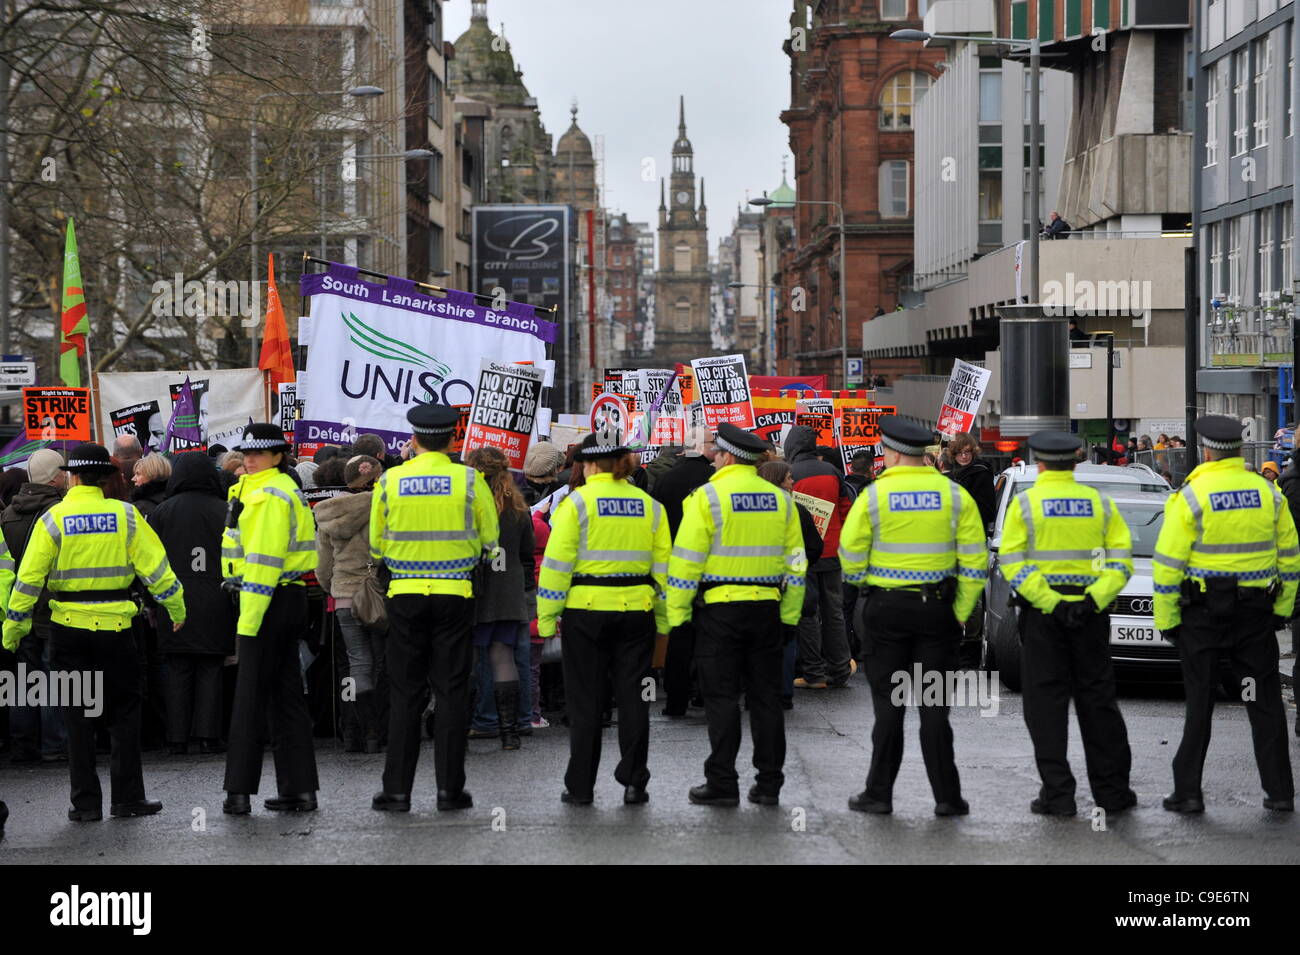 Cordone di polizia off George Street di Glasgow come i sindacati e altri gruppi impostato su off sulla marcia di protesta a Gallowgate nell'East End della città. Foto Stock